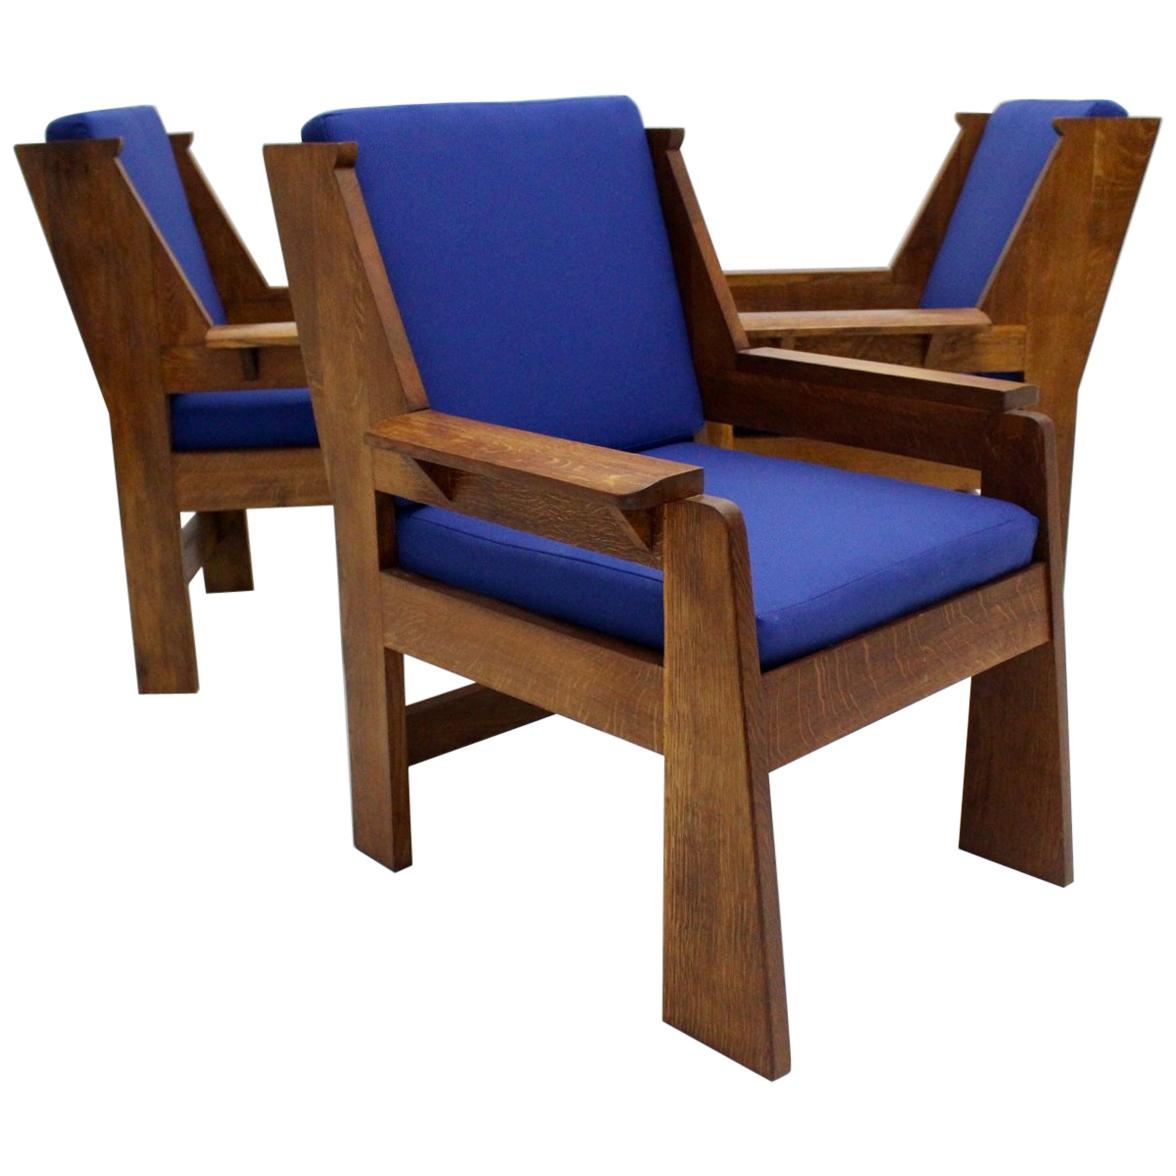 Art Deco Czech Cubism Oak Wood Blue Fabric Vintage Armchairs Lounge Chairs 1920s